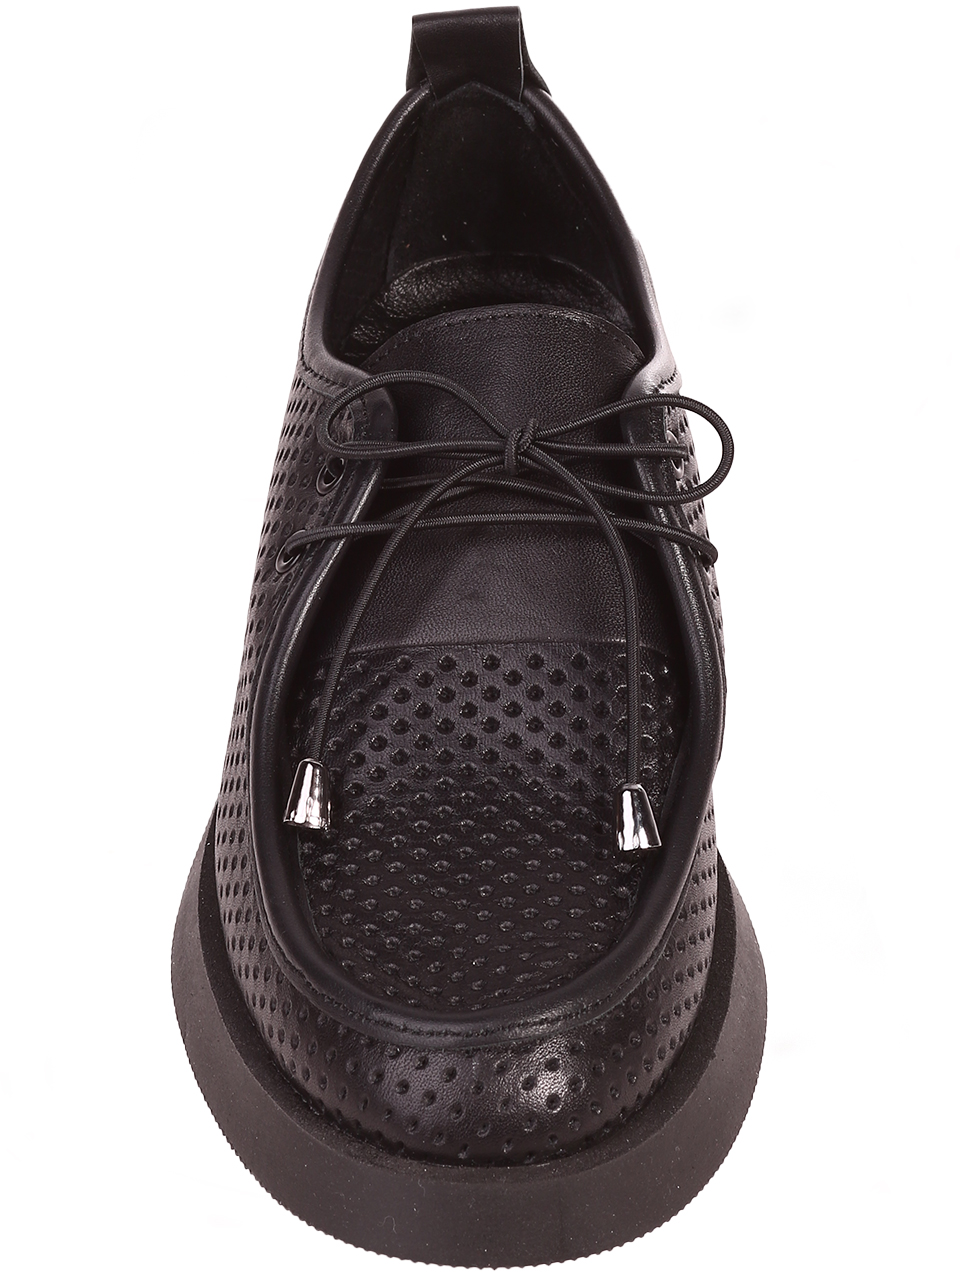 Ежедневни дамски обувки от естествена кожа в черно 3AT-24337 black